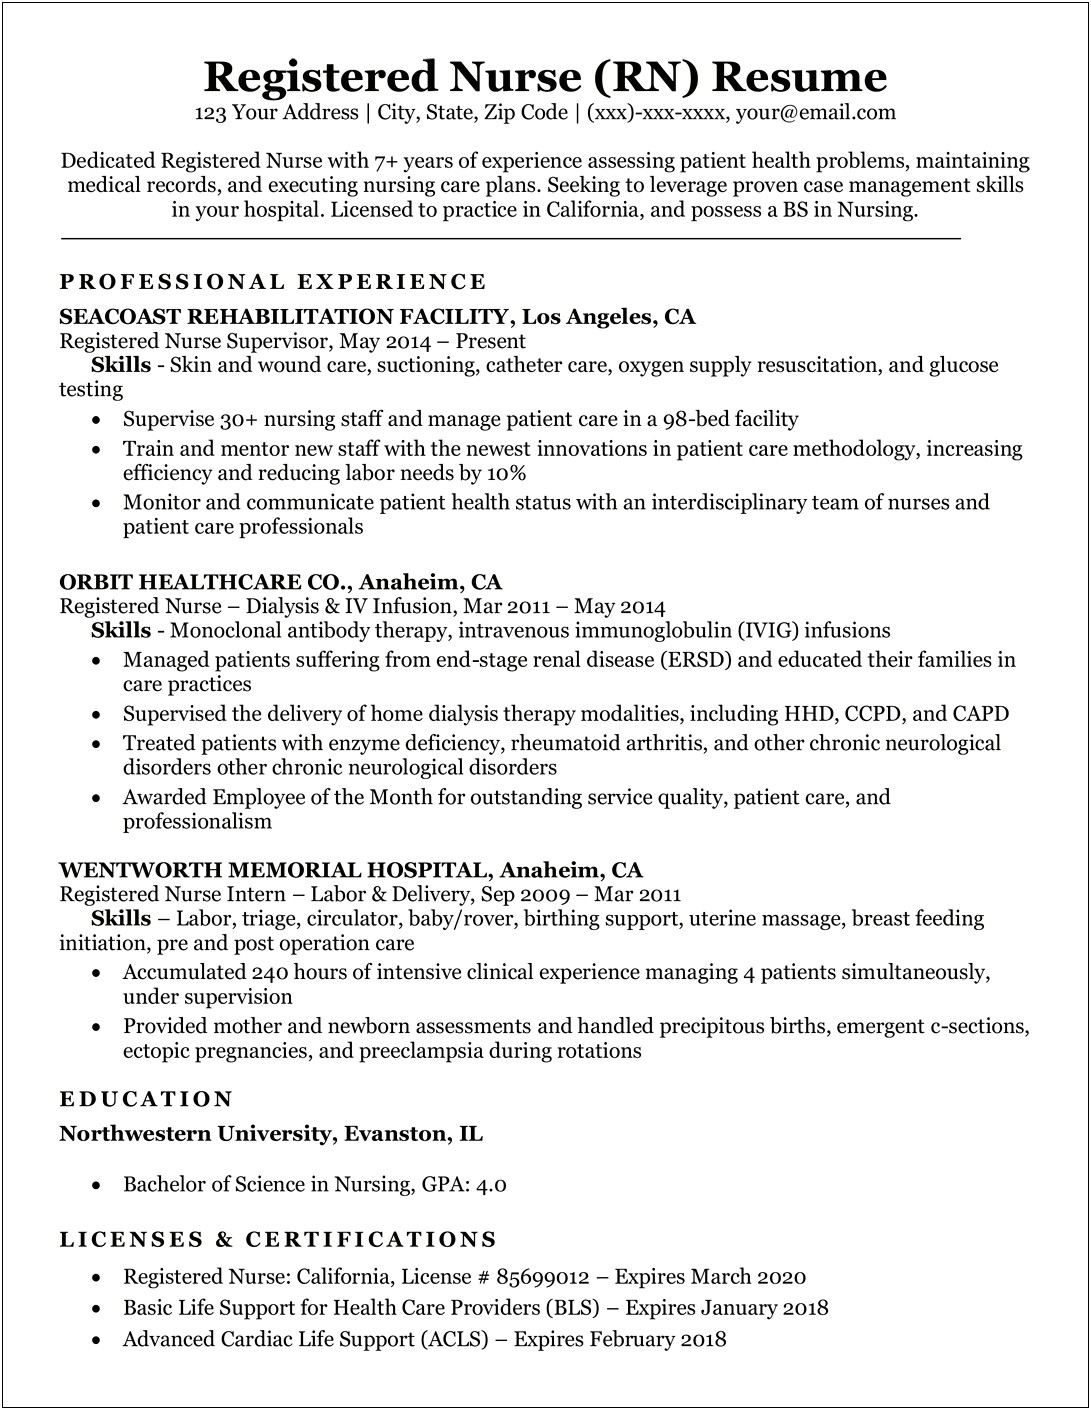 Career Objective For Resume For Nursing